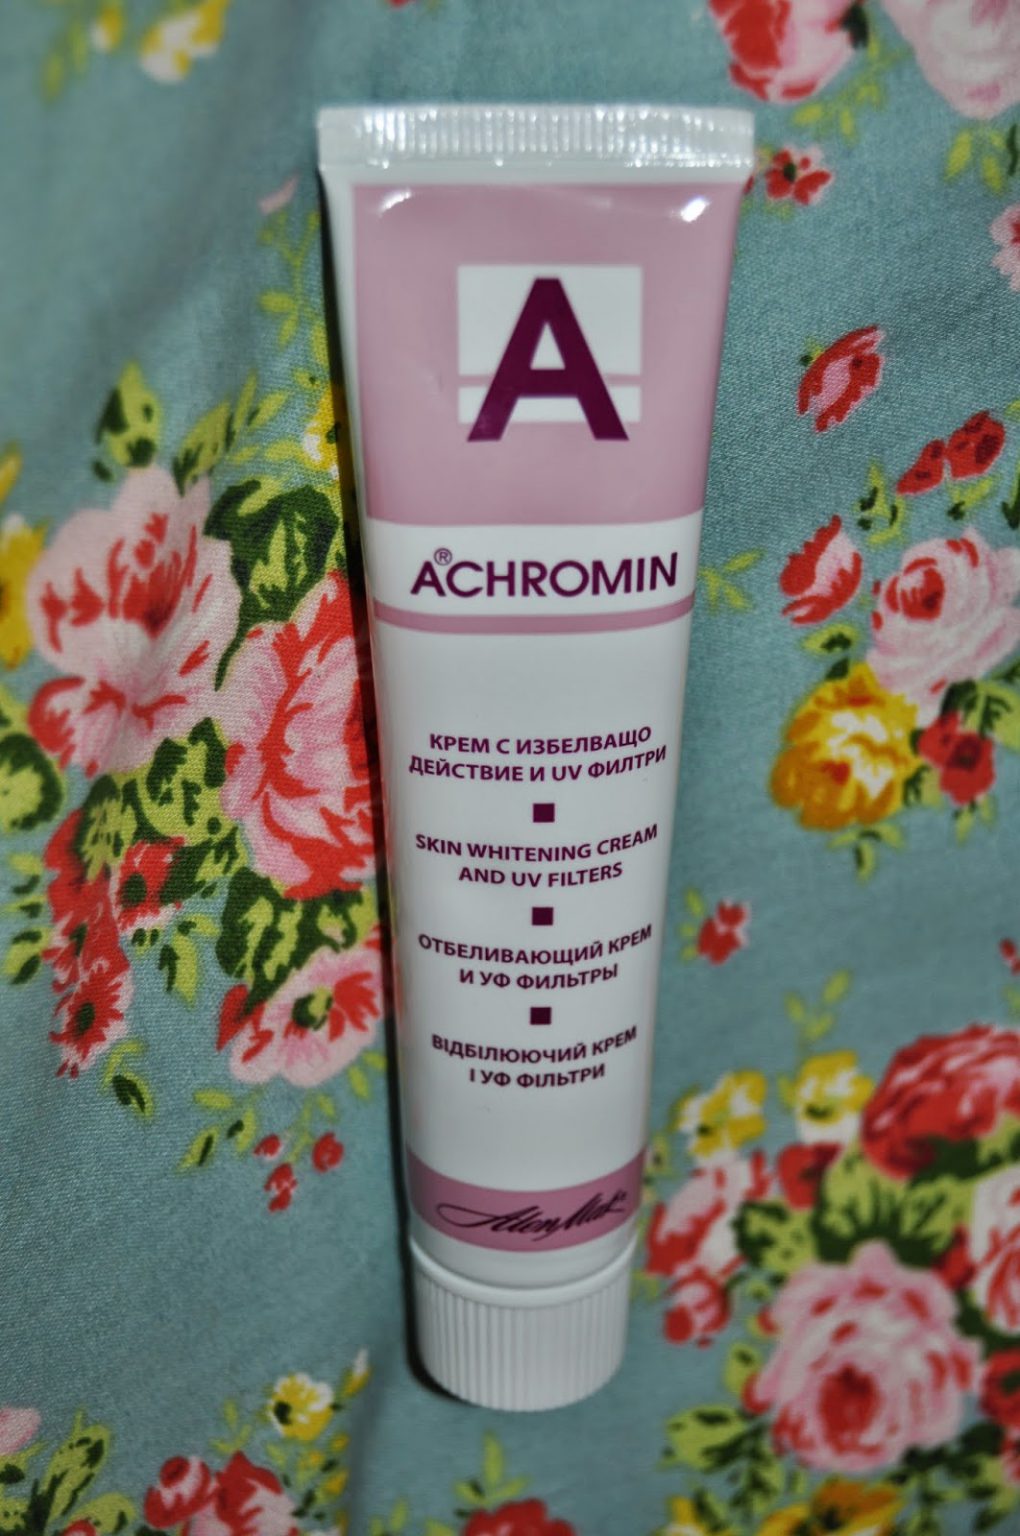 Ахромин крем отбеливающий купить. Ахромин крем. Ахромин крем дневной. Ахромин от пигментных пятен. Ахромин солнцезащитный крем.